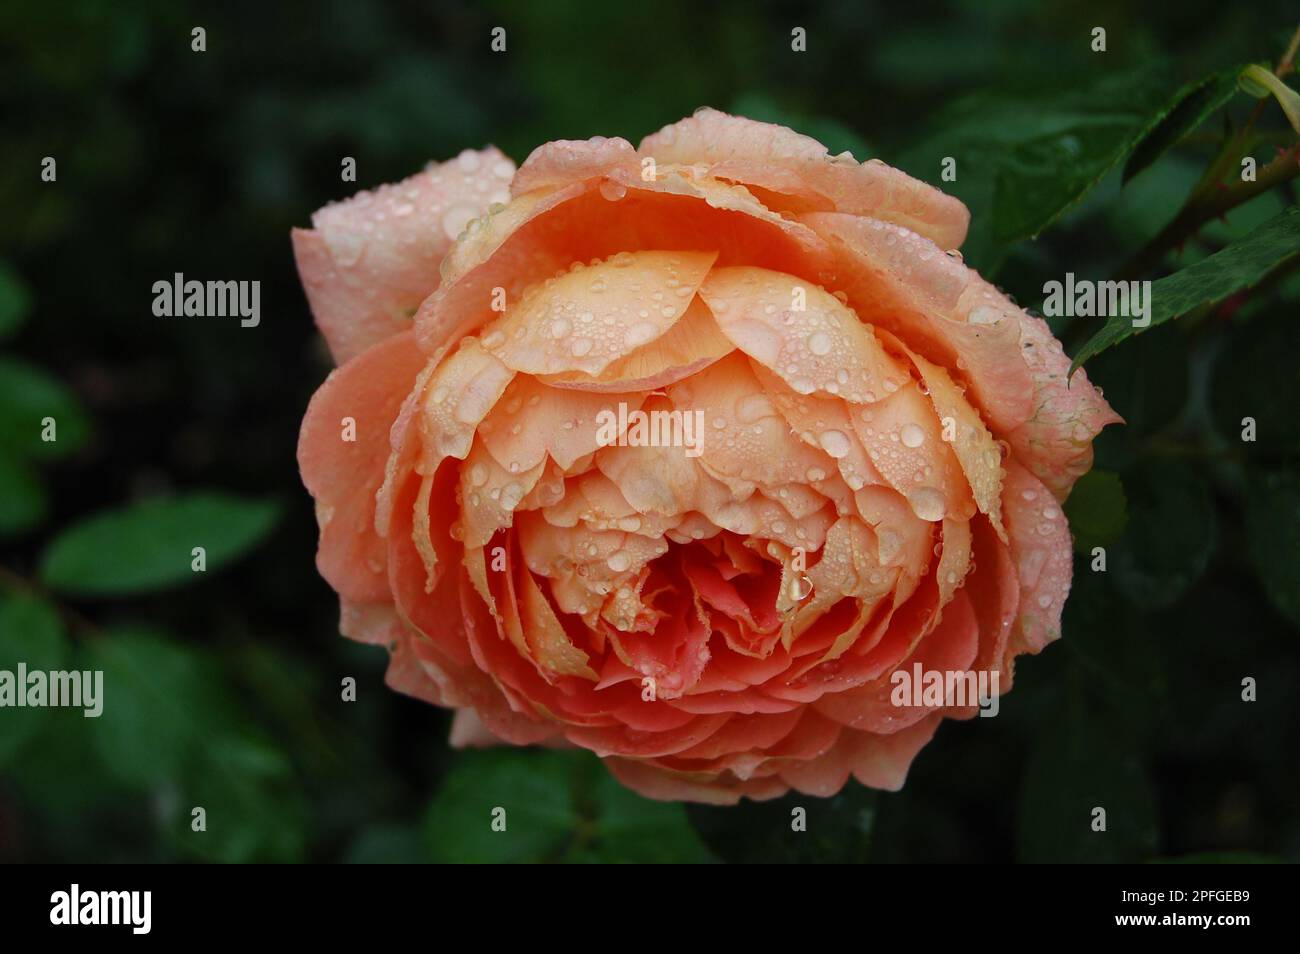 Nahaufnahme einer orangefarbenen, pfirsichfarbenen Rose mit Regentropfen und grünen Blättern im Hintergrund Stockfoto